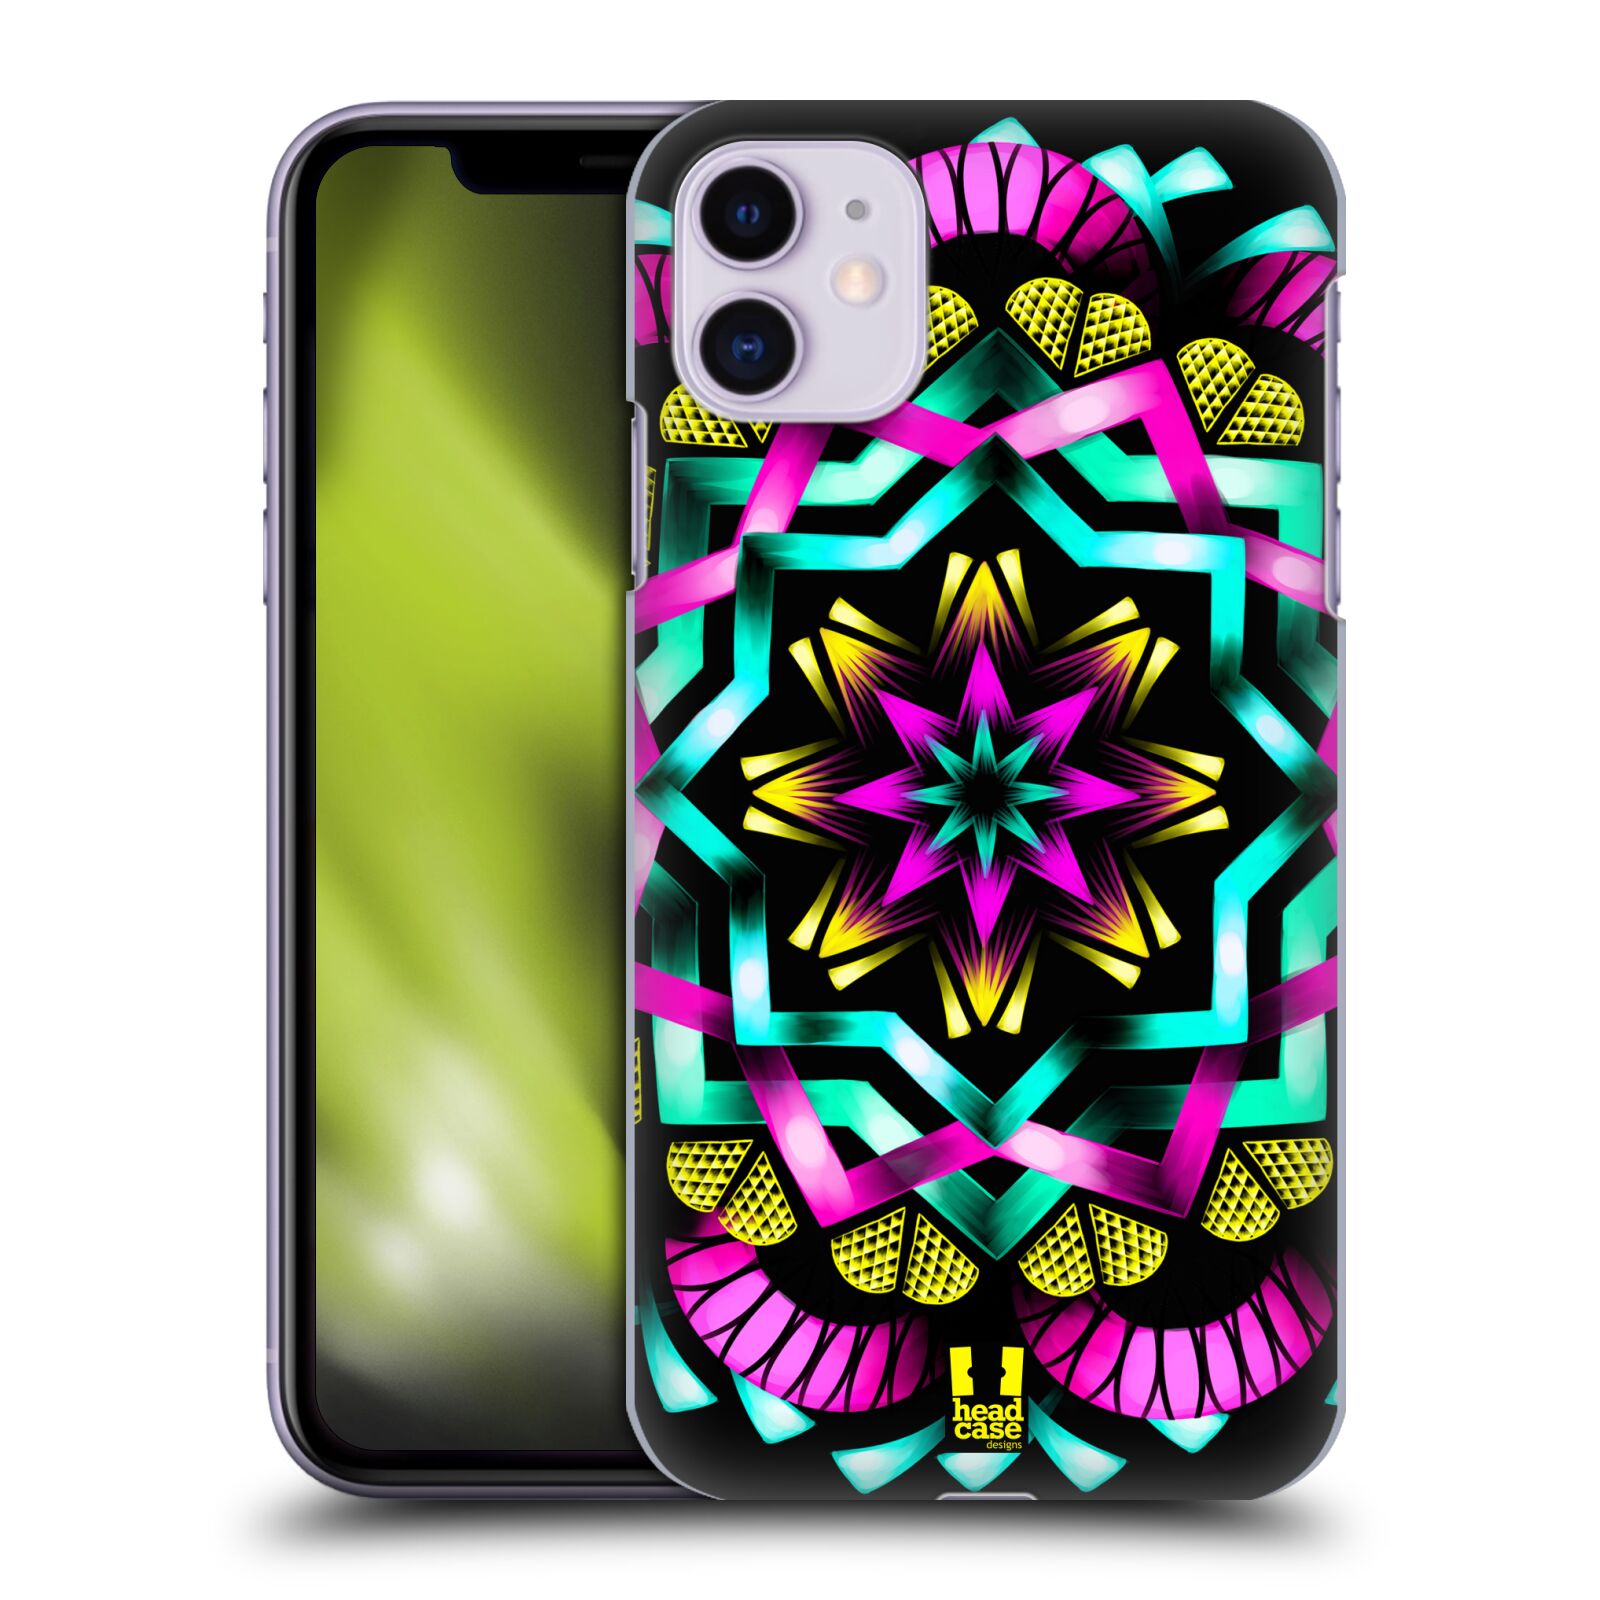 Pouzdro na mobil Apple Iphone 11 - HEAD CASE - vzor Indie Mandala kaleidoskop barevný vzor SLUNCE